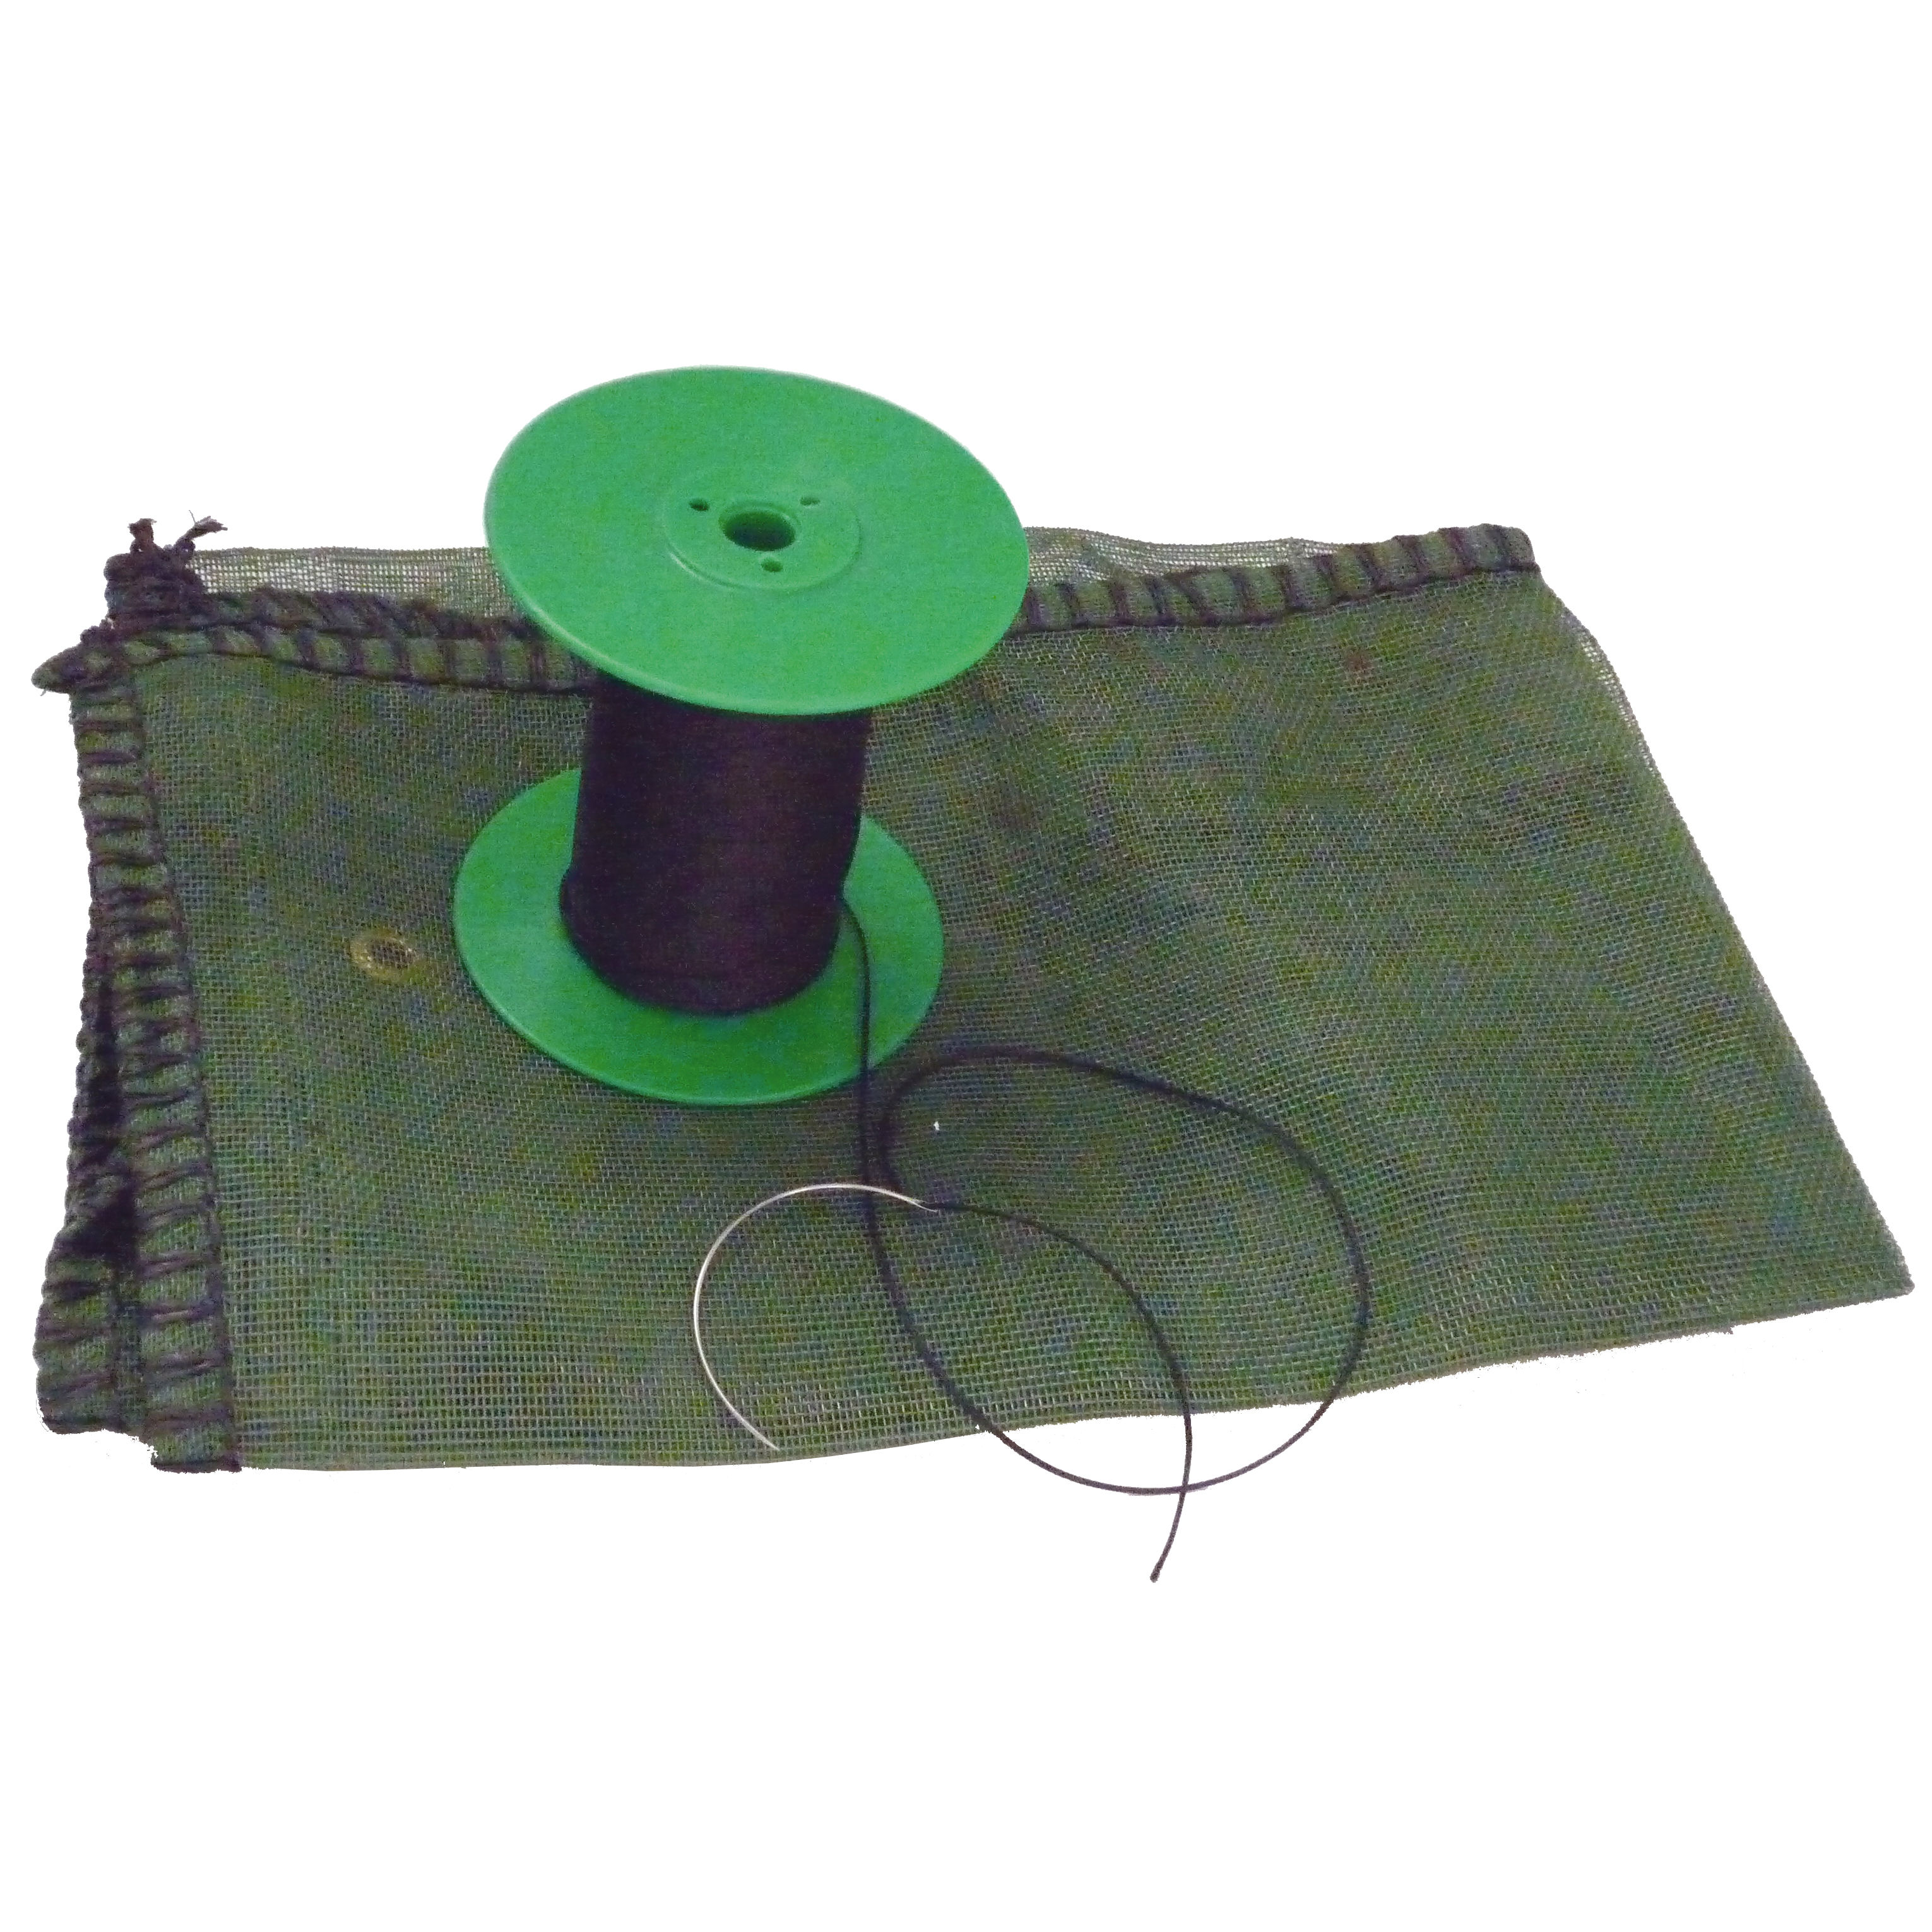 Reparaturset für Gitterflex grün Nadel, Faden und Gitterflex grün mit ca. 1m²